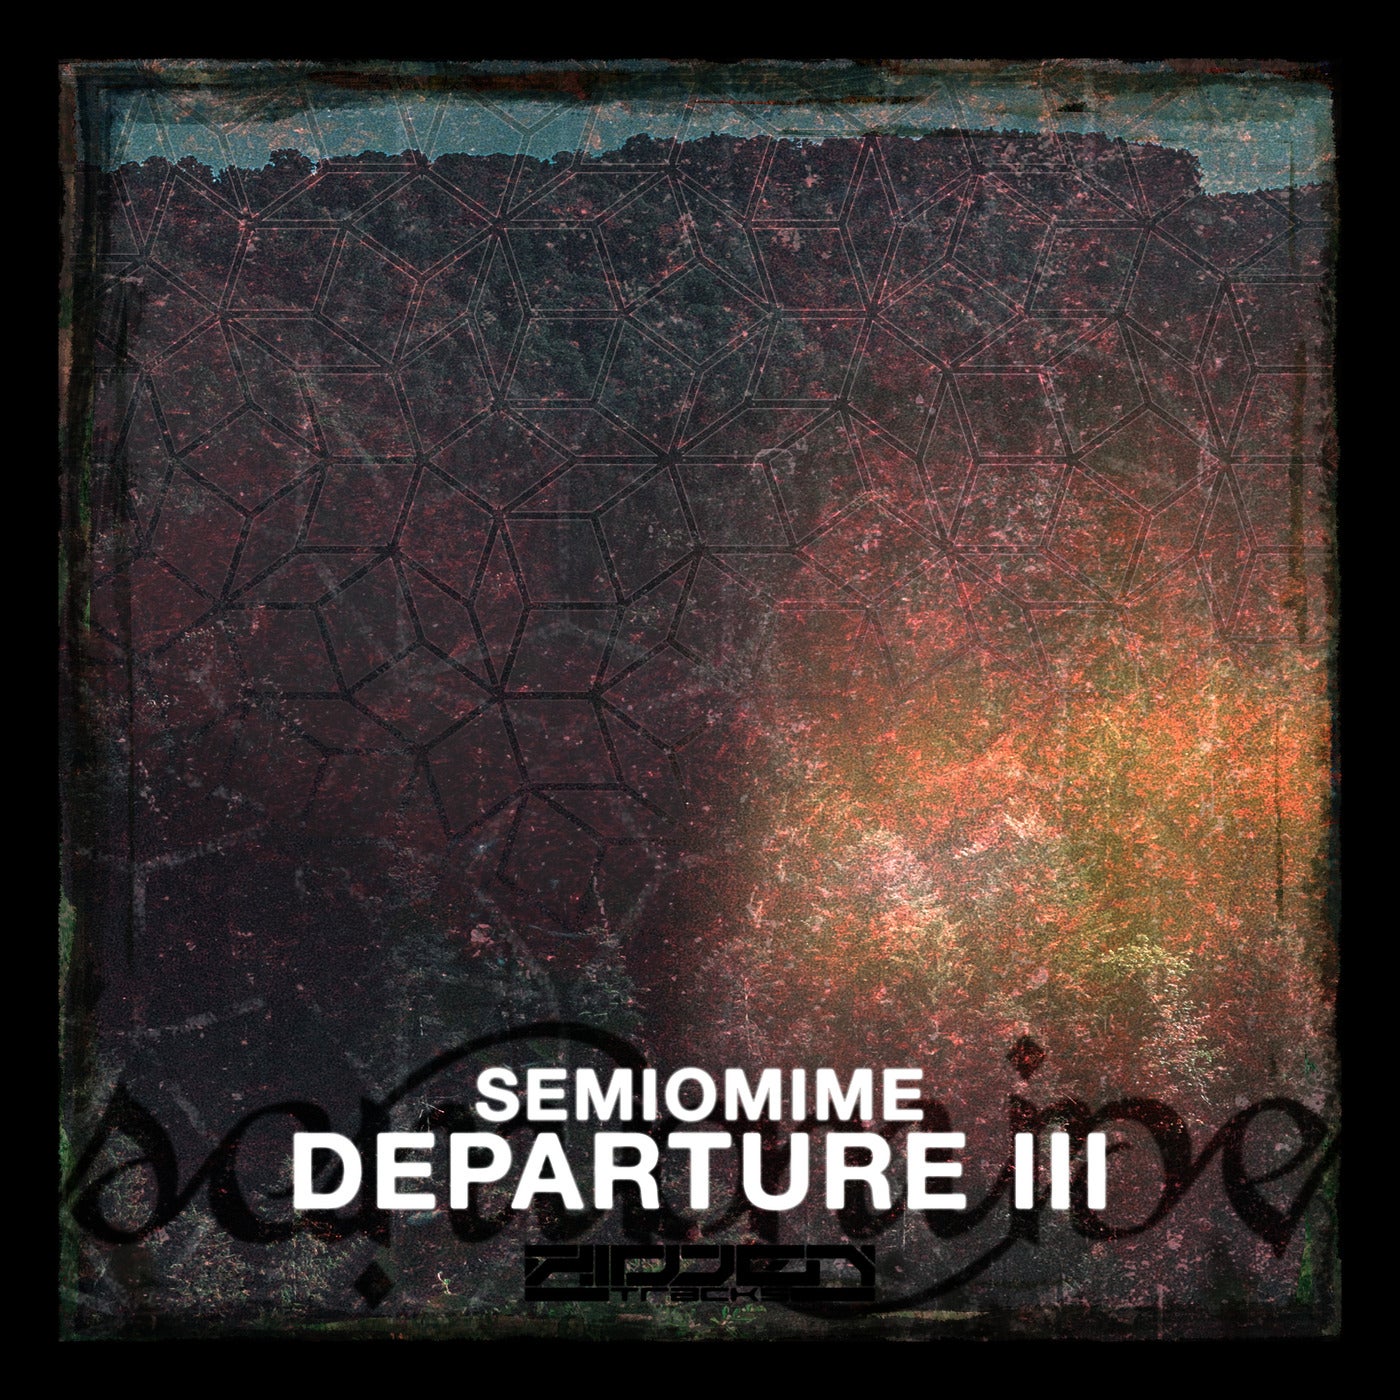 Departure III